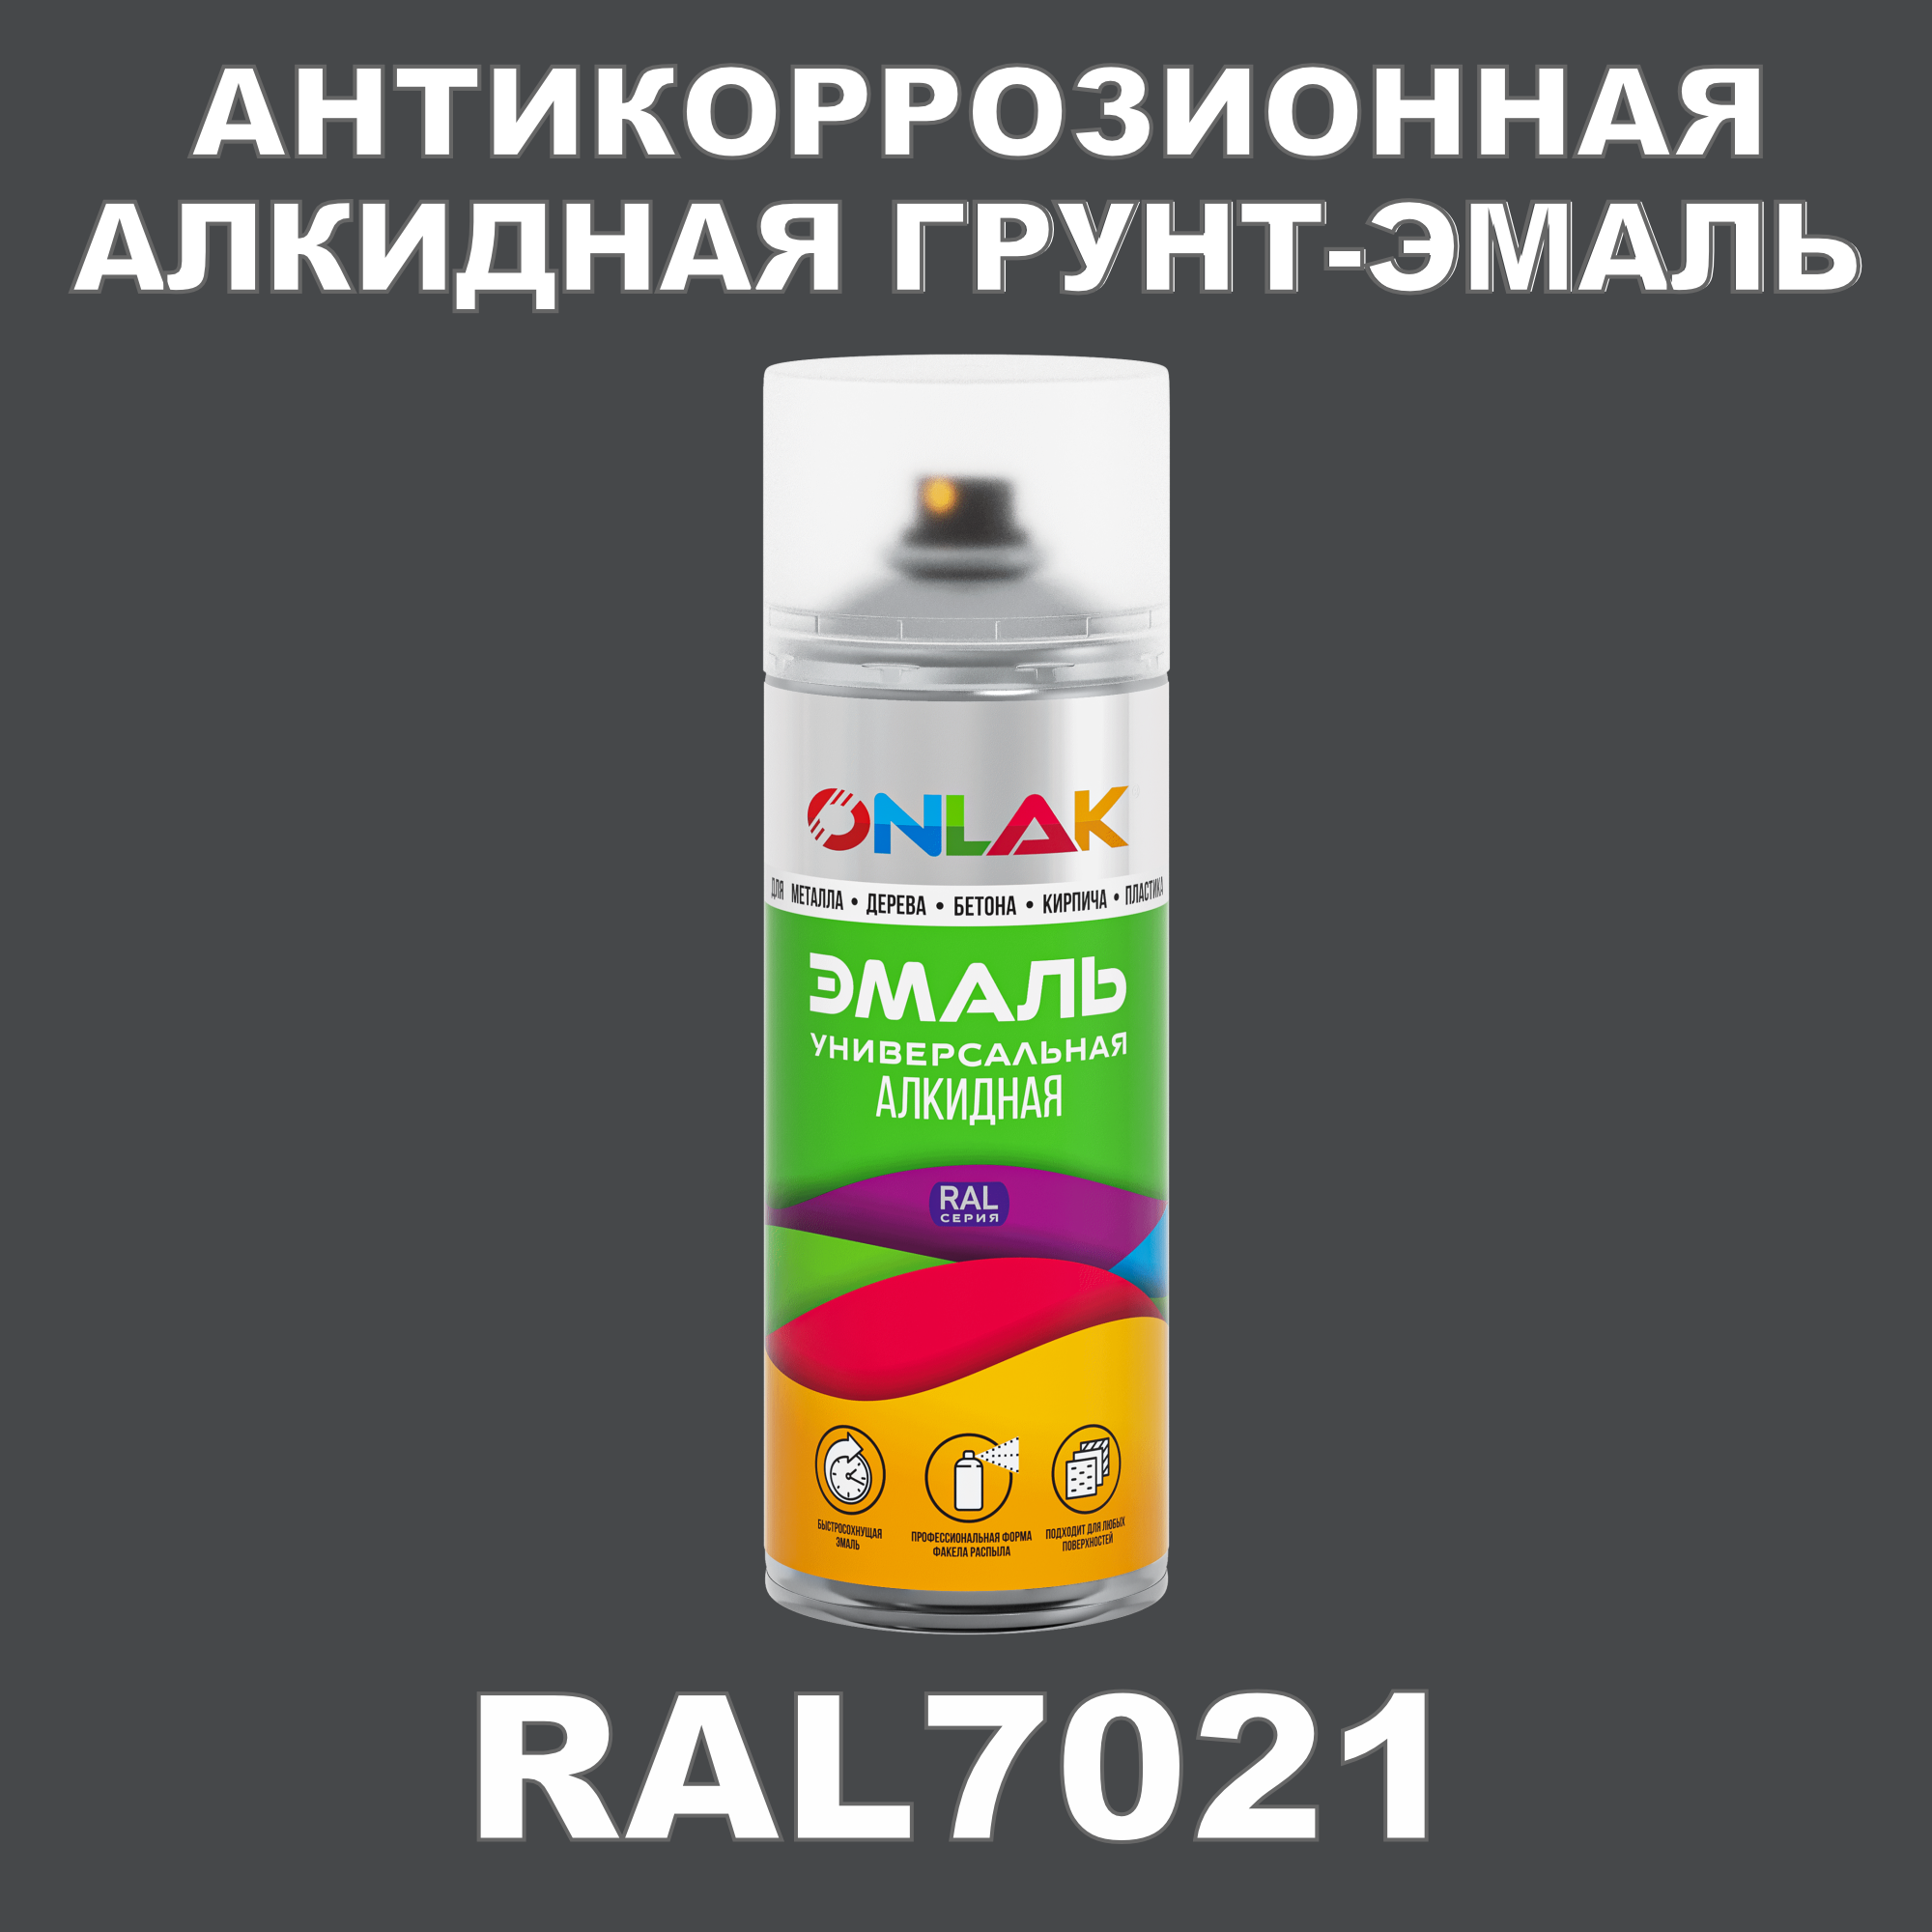 Антикоррозионная грунт-эмаль ONLAK RAL7021 полуматовая для металла и защиты от ржавчины